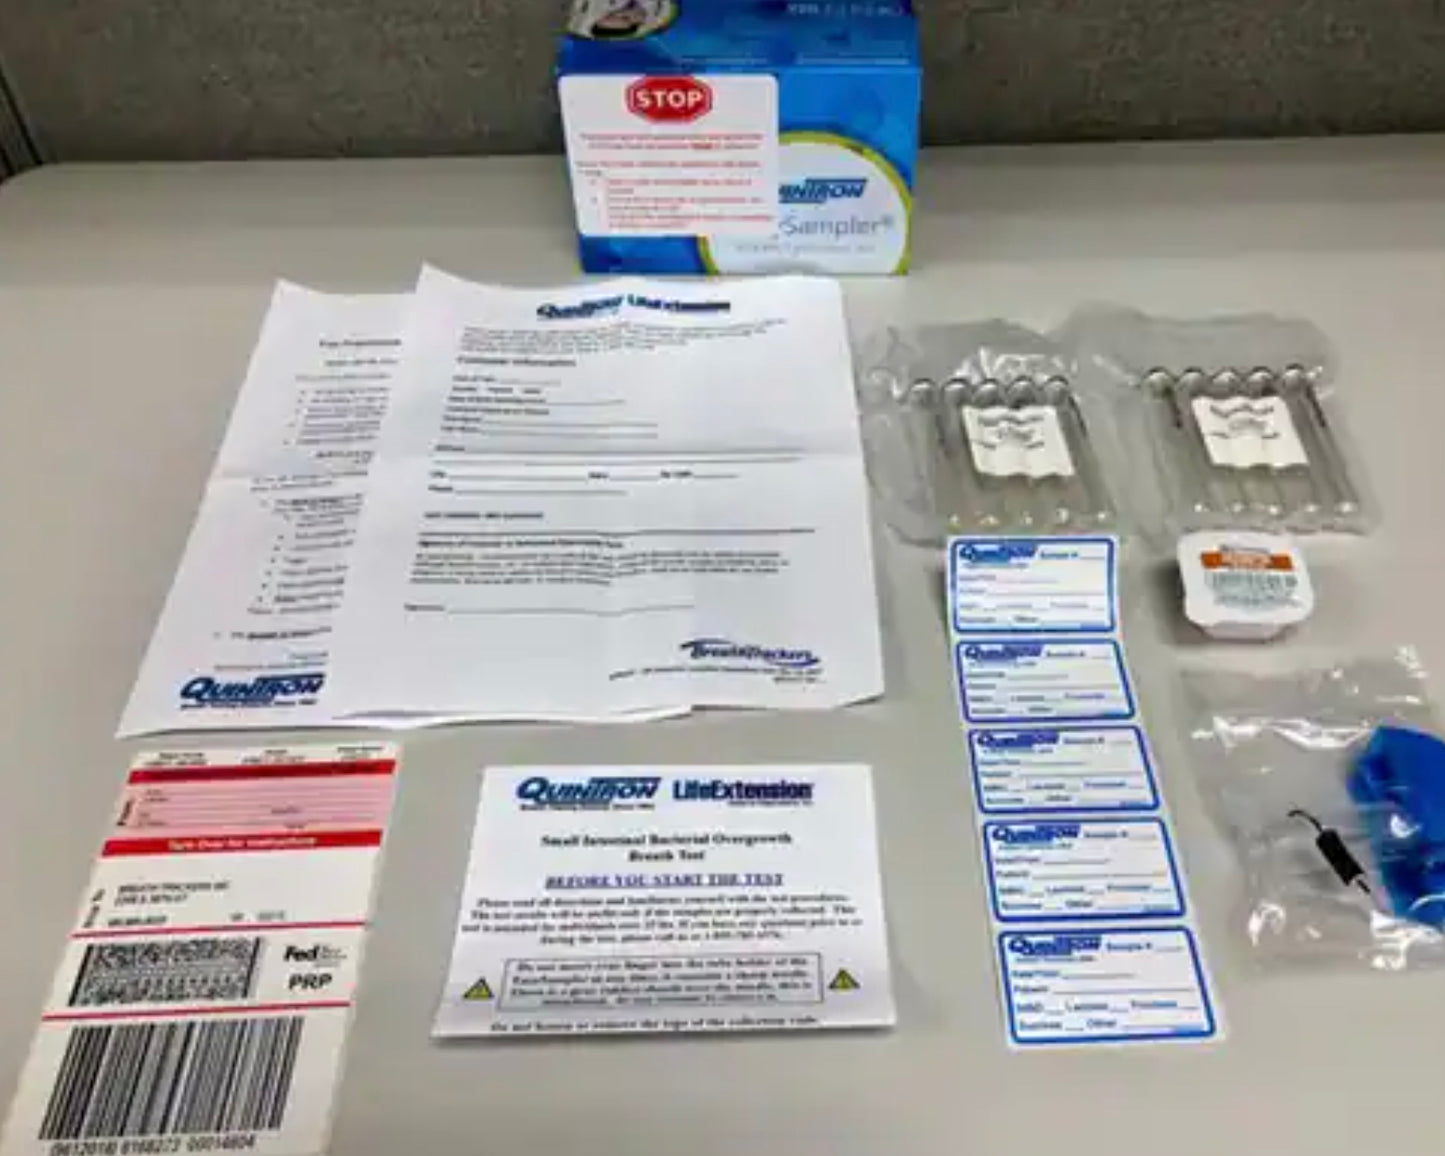 SIBO Home Breath Kit (Lactulose) Breath Test